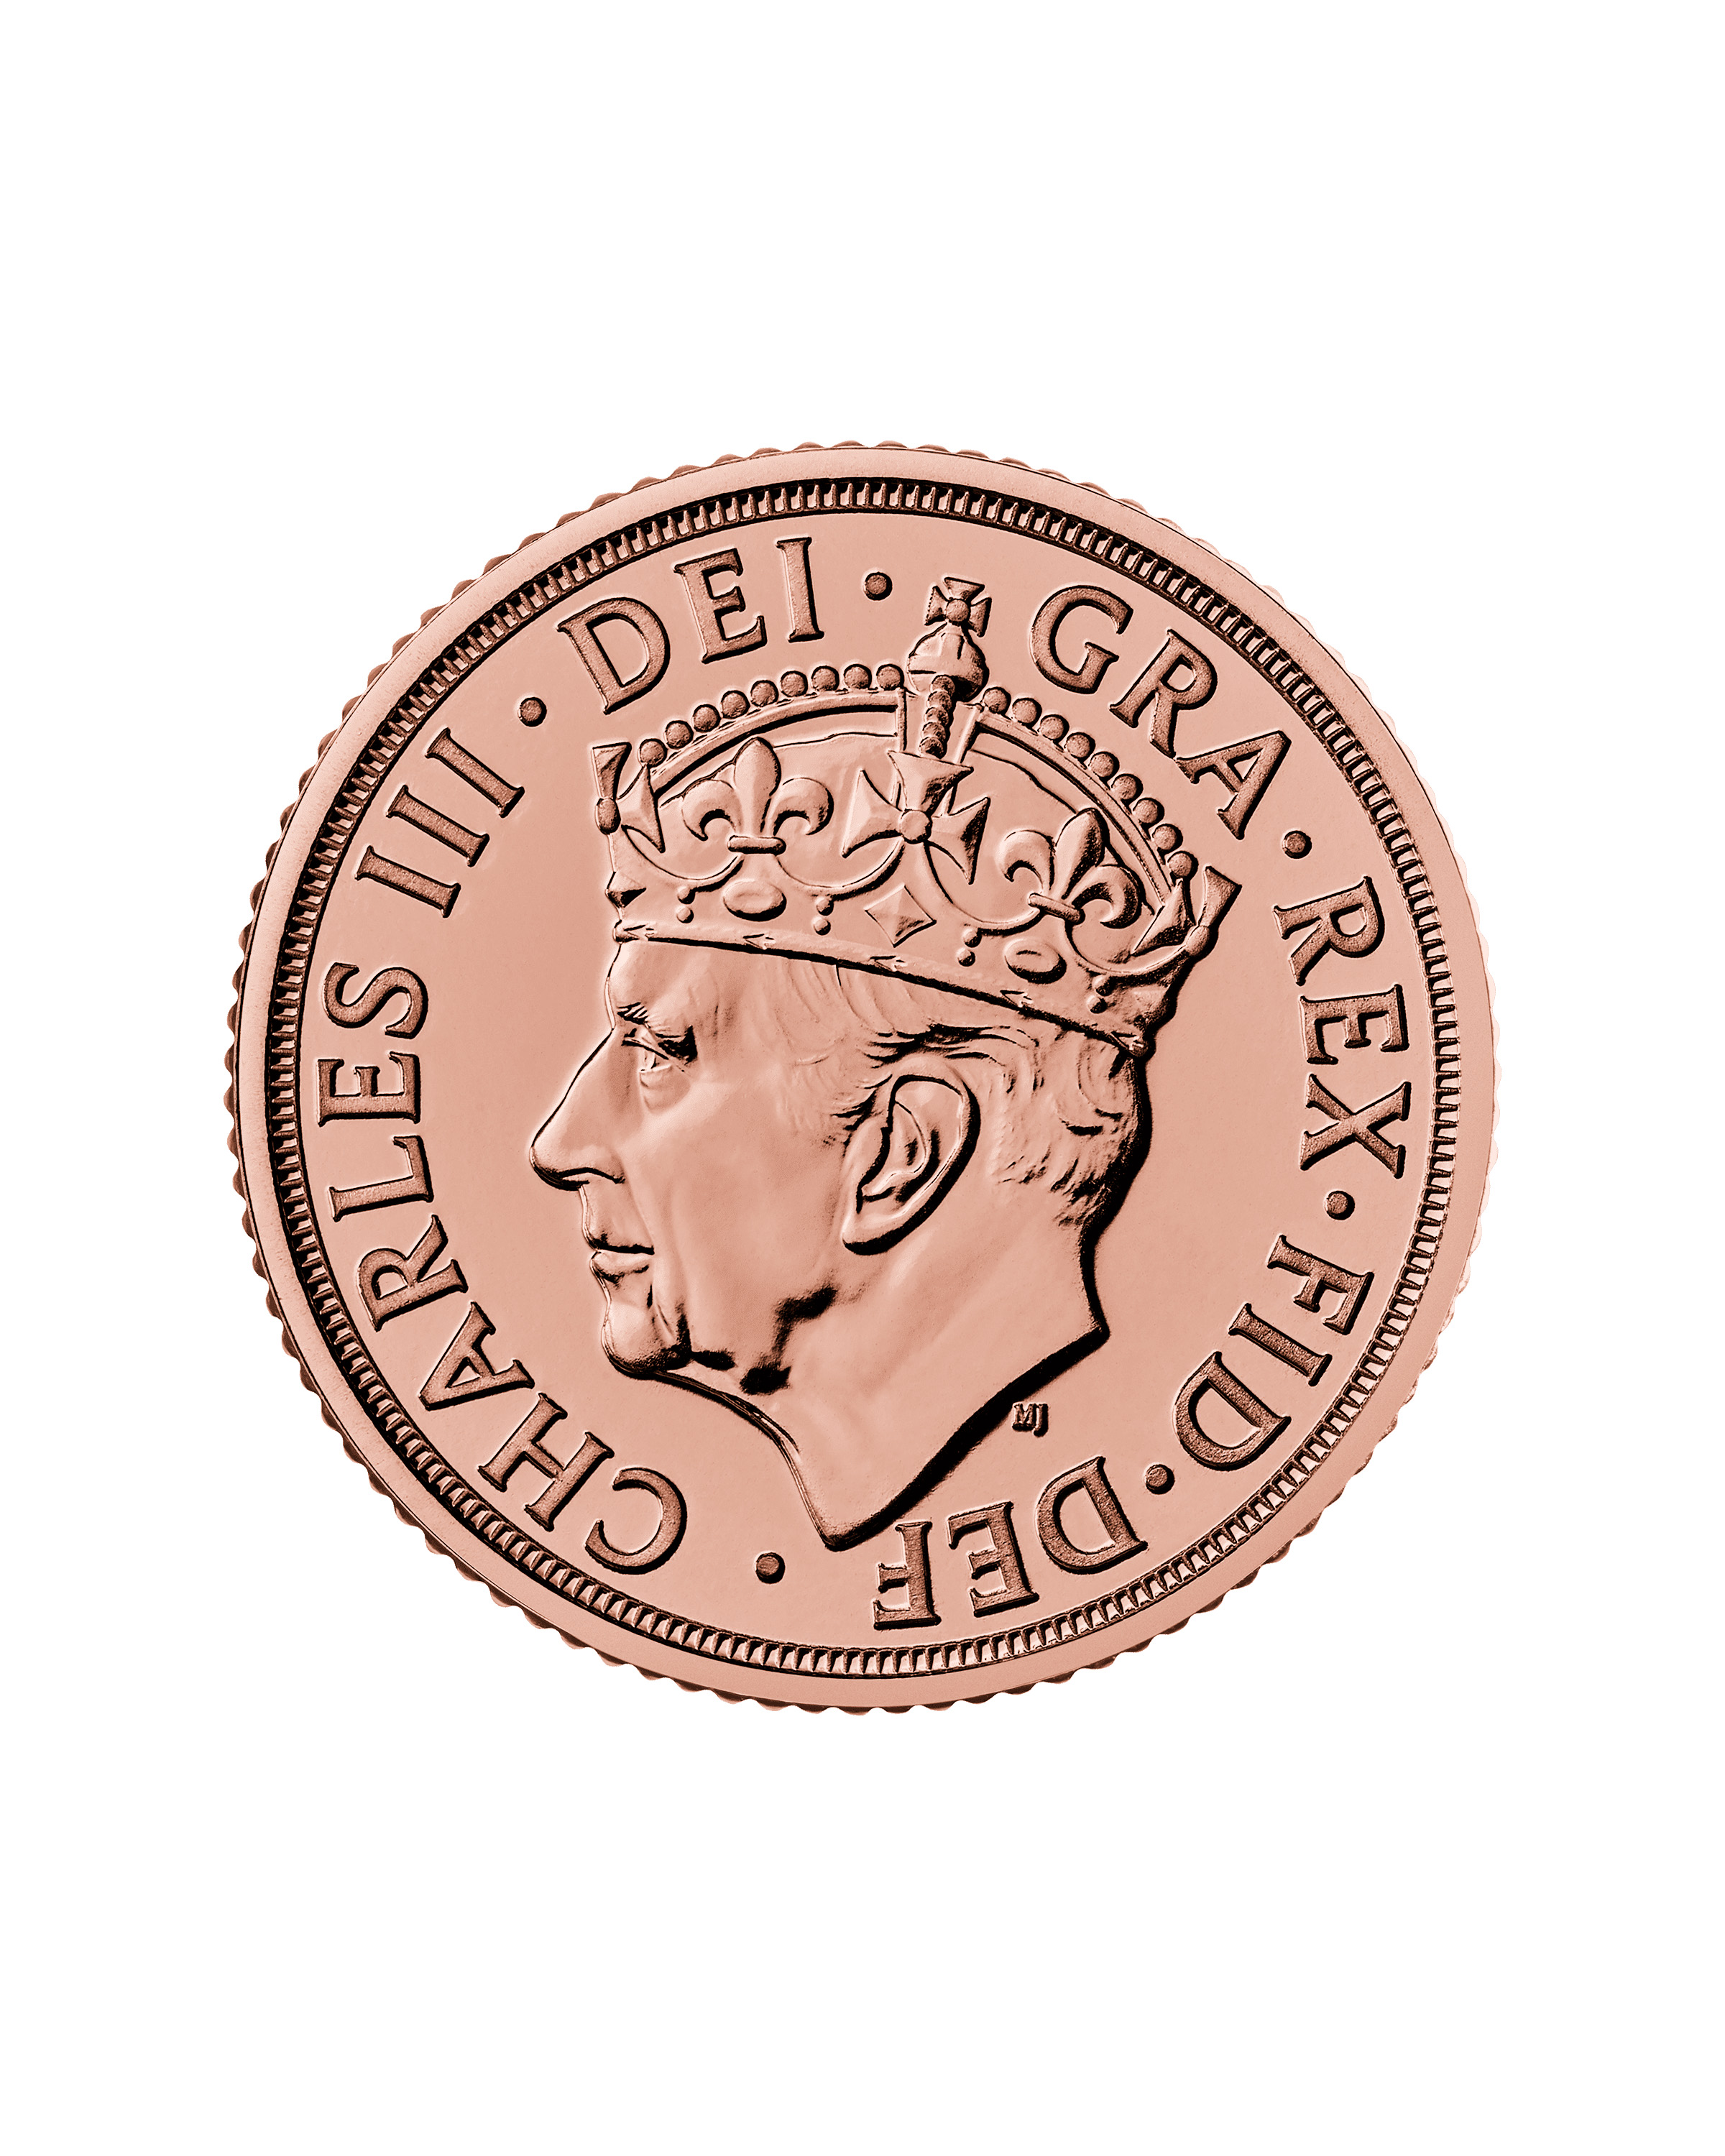 The Coronation Sovereign 2023 Gold Bullion Coin